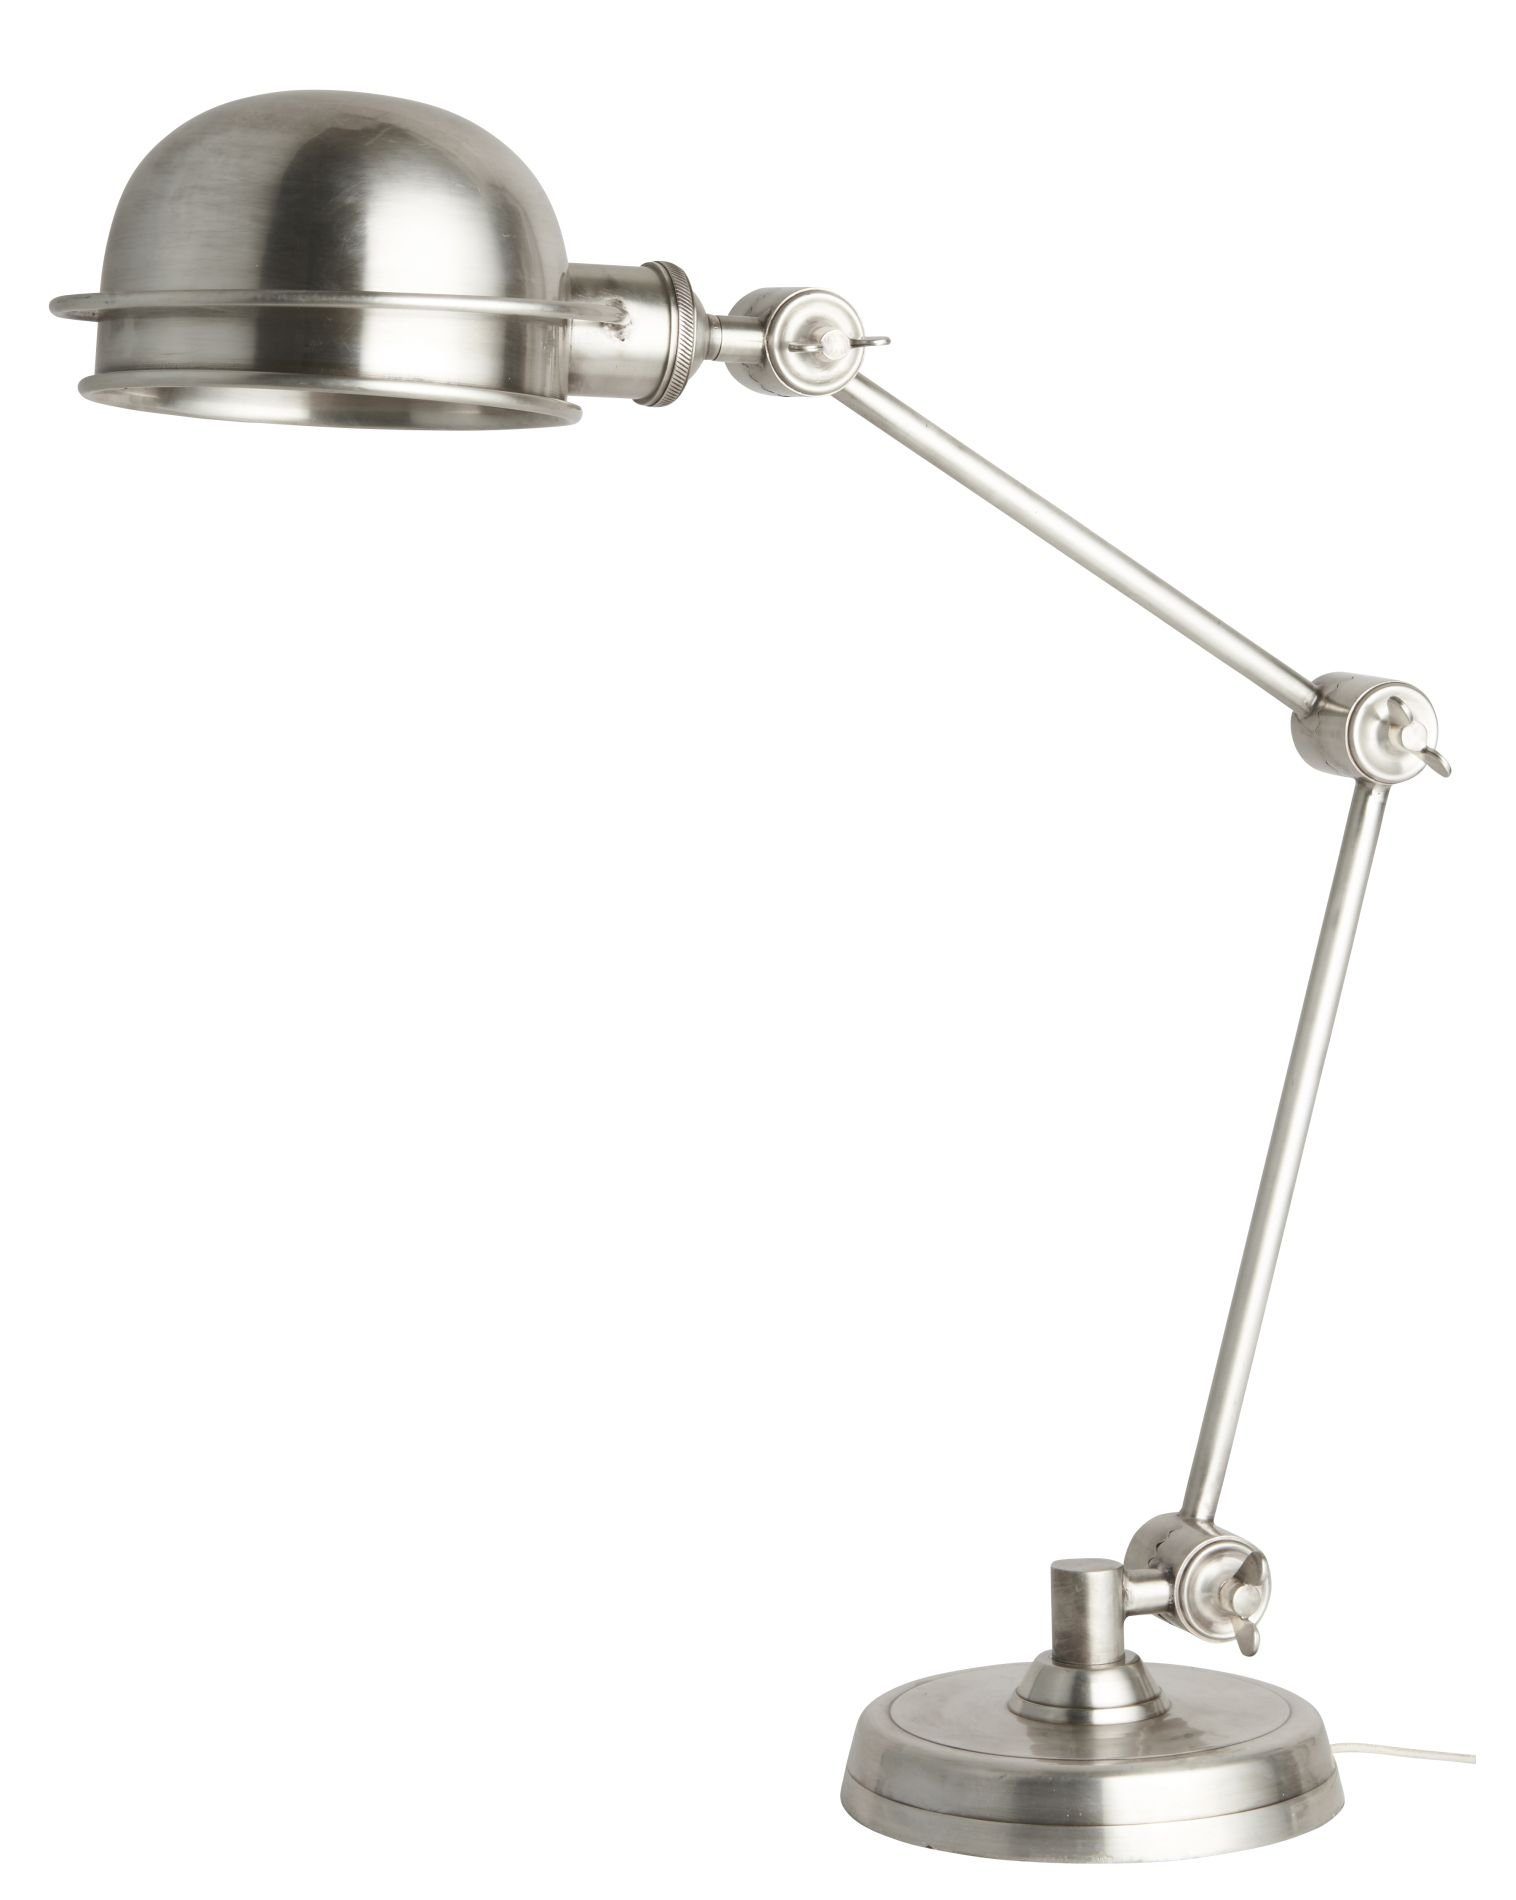 Ib Laursen Schreibtischlampe »Laursen - Tischlampe Messing 1196-00  Schreibtischlampe Stehlampe Lampe Leuchte« online kaufen | OTTO